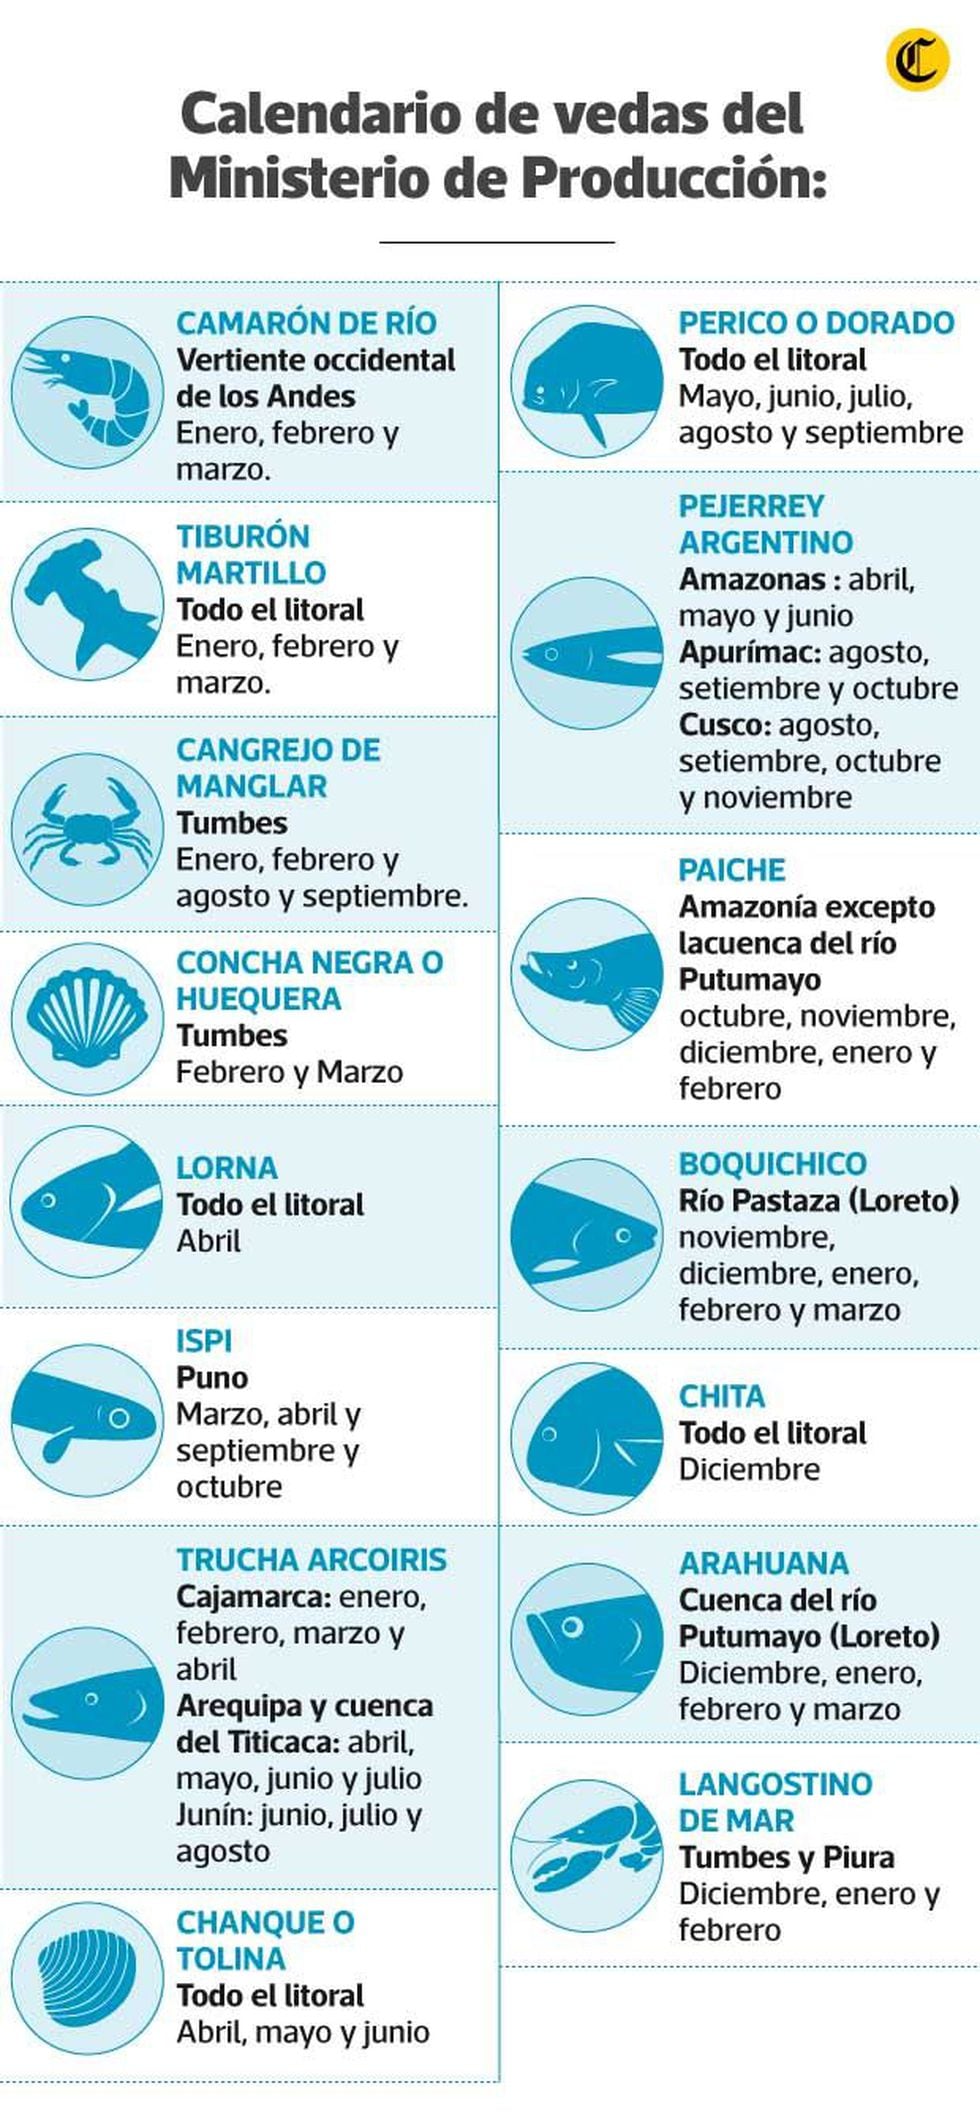 Especies en veda y fechas en las que no pueden ser pescadas o comercializadas, según el Ministerio de Producción. (Infografía: GEC)